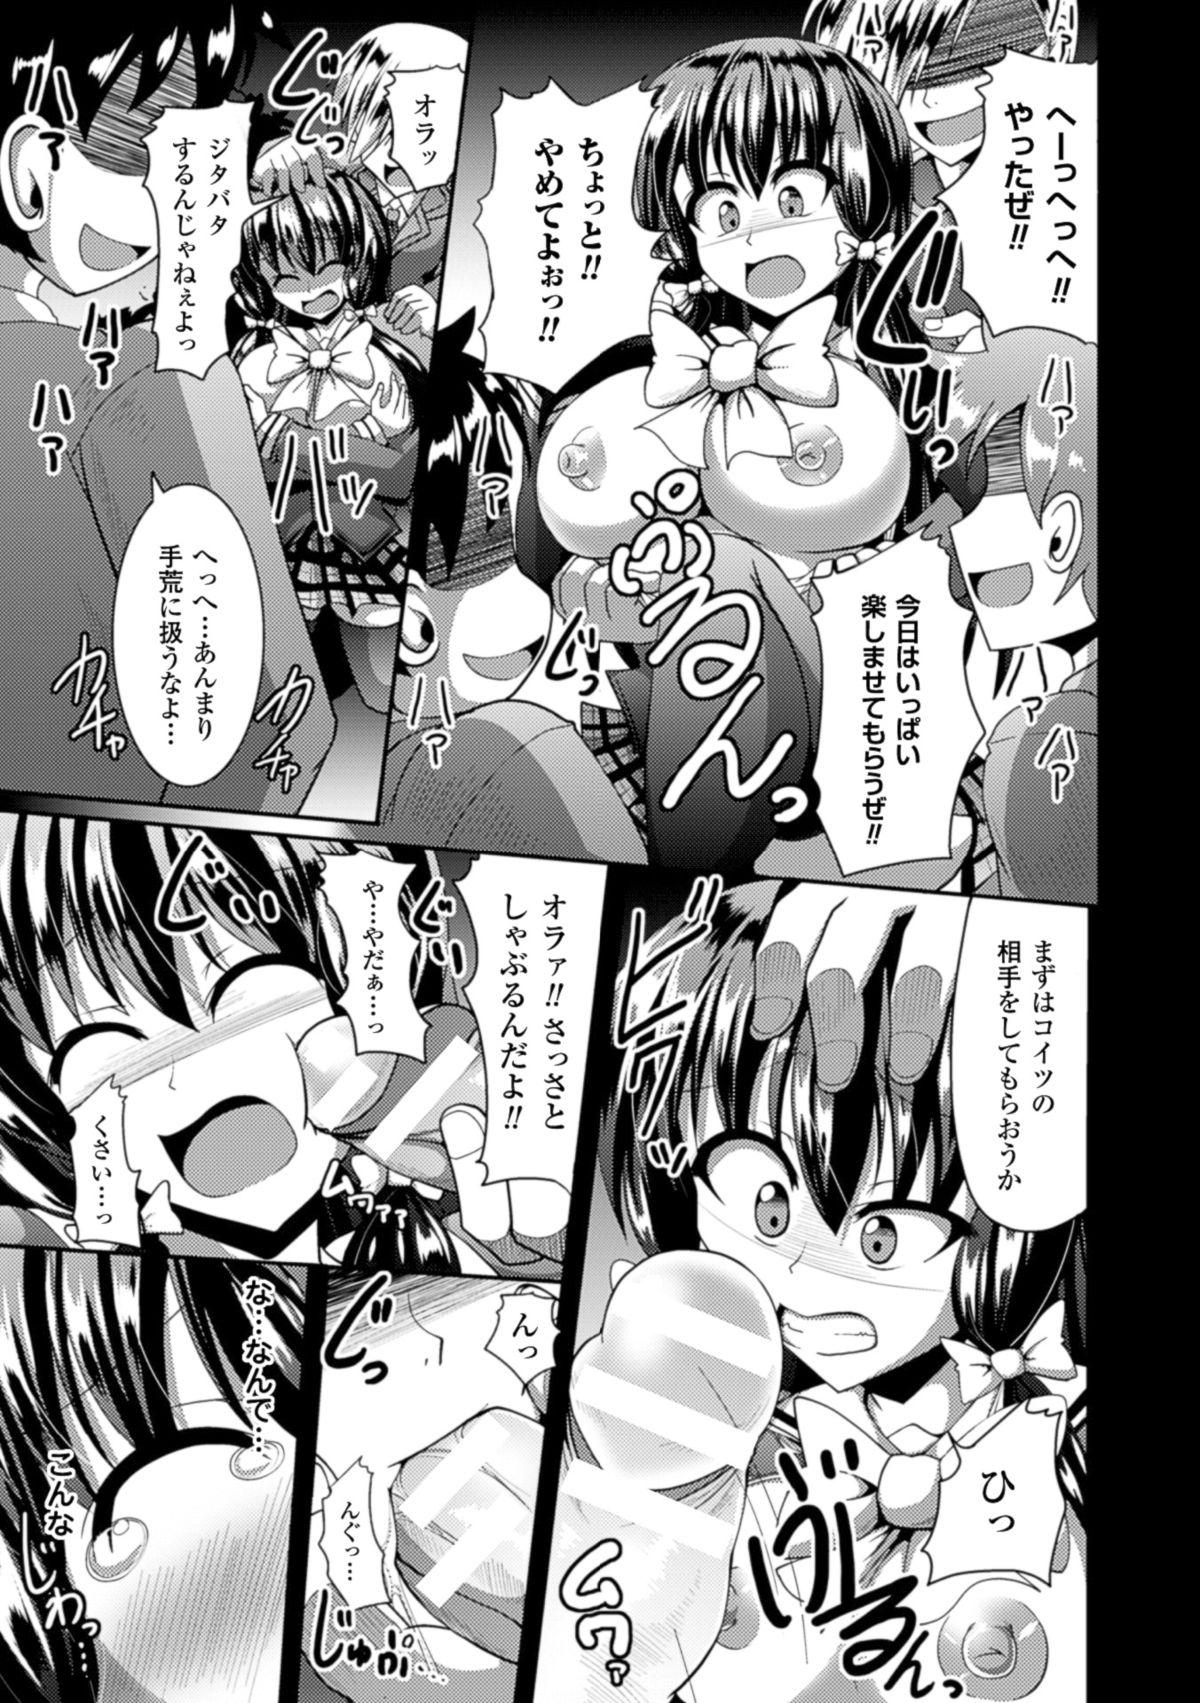 [Anthology] 2D Comic Magazine - ReaJuu Bishoujo-tachi o Haramase Ninshin! Vol. 2 [Digital] 52